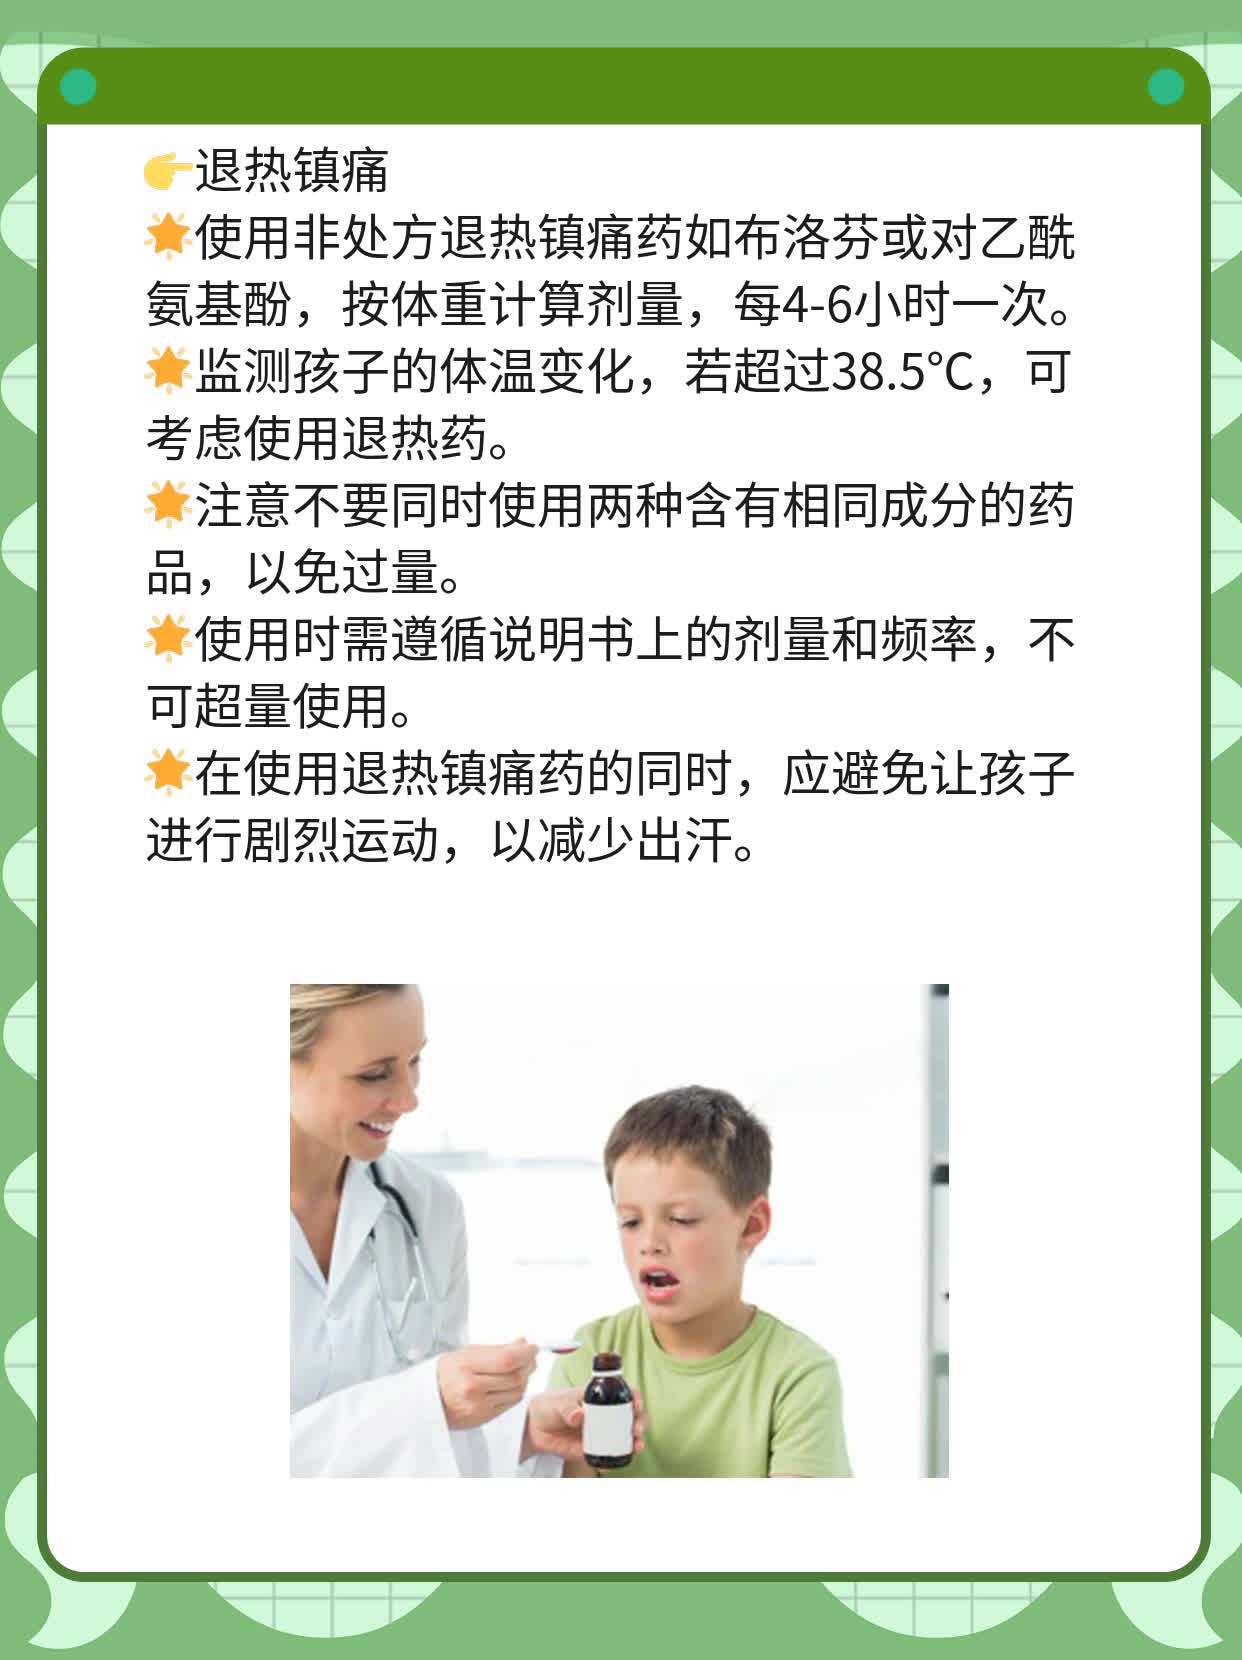 「感冒用药」：保障宝宝健康的选择！常见儿童感冒药品推荐